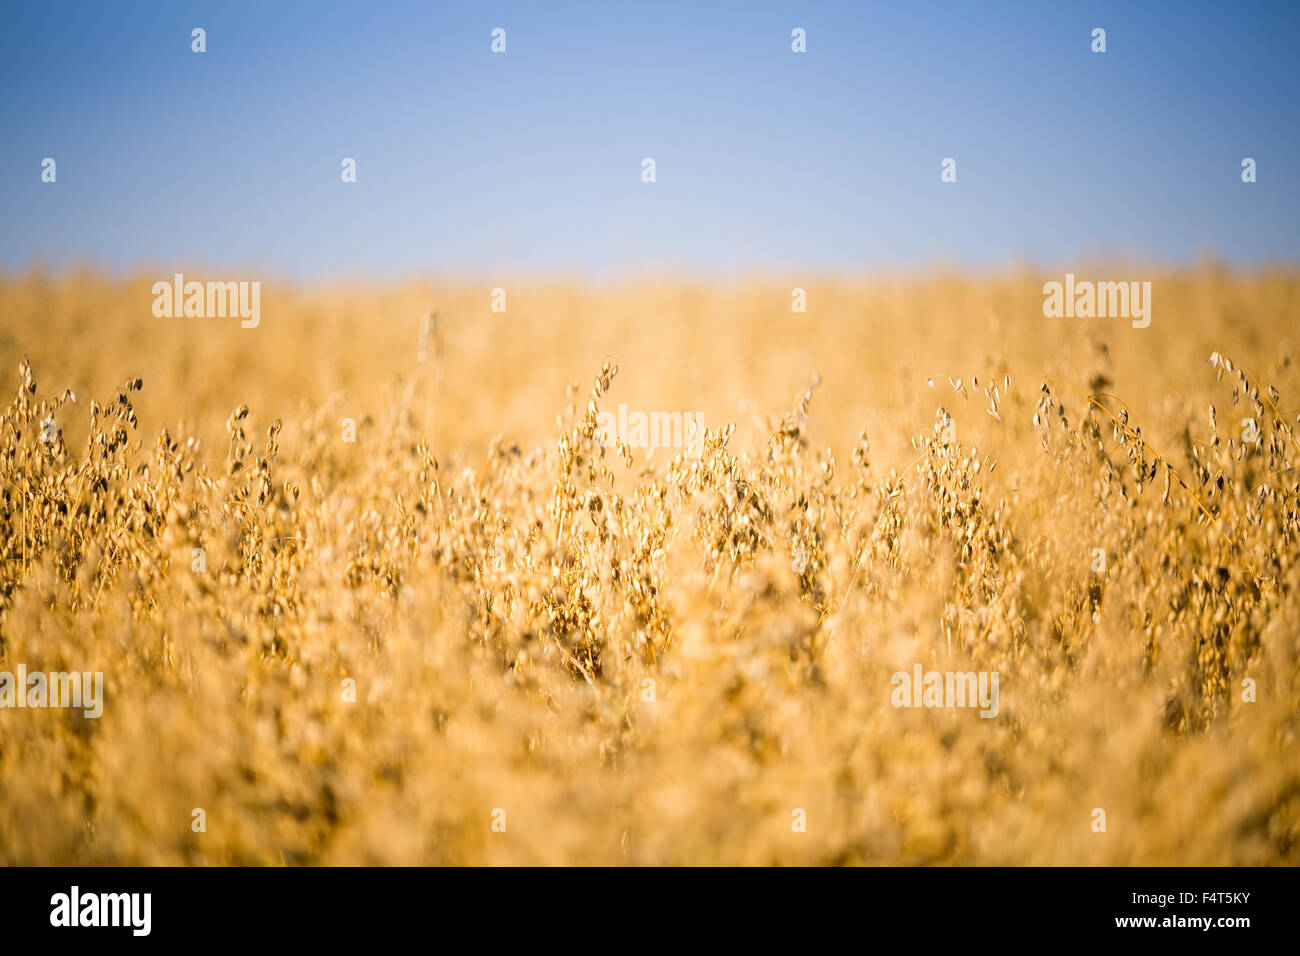 yellow oat field under blue sky Stock Photo